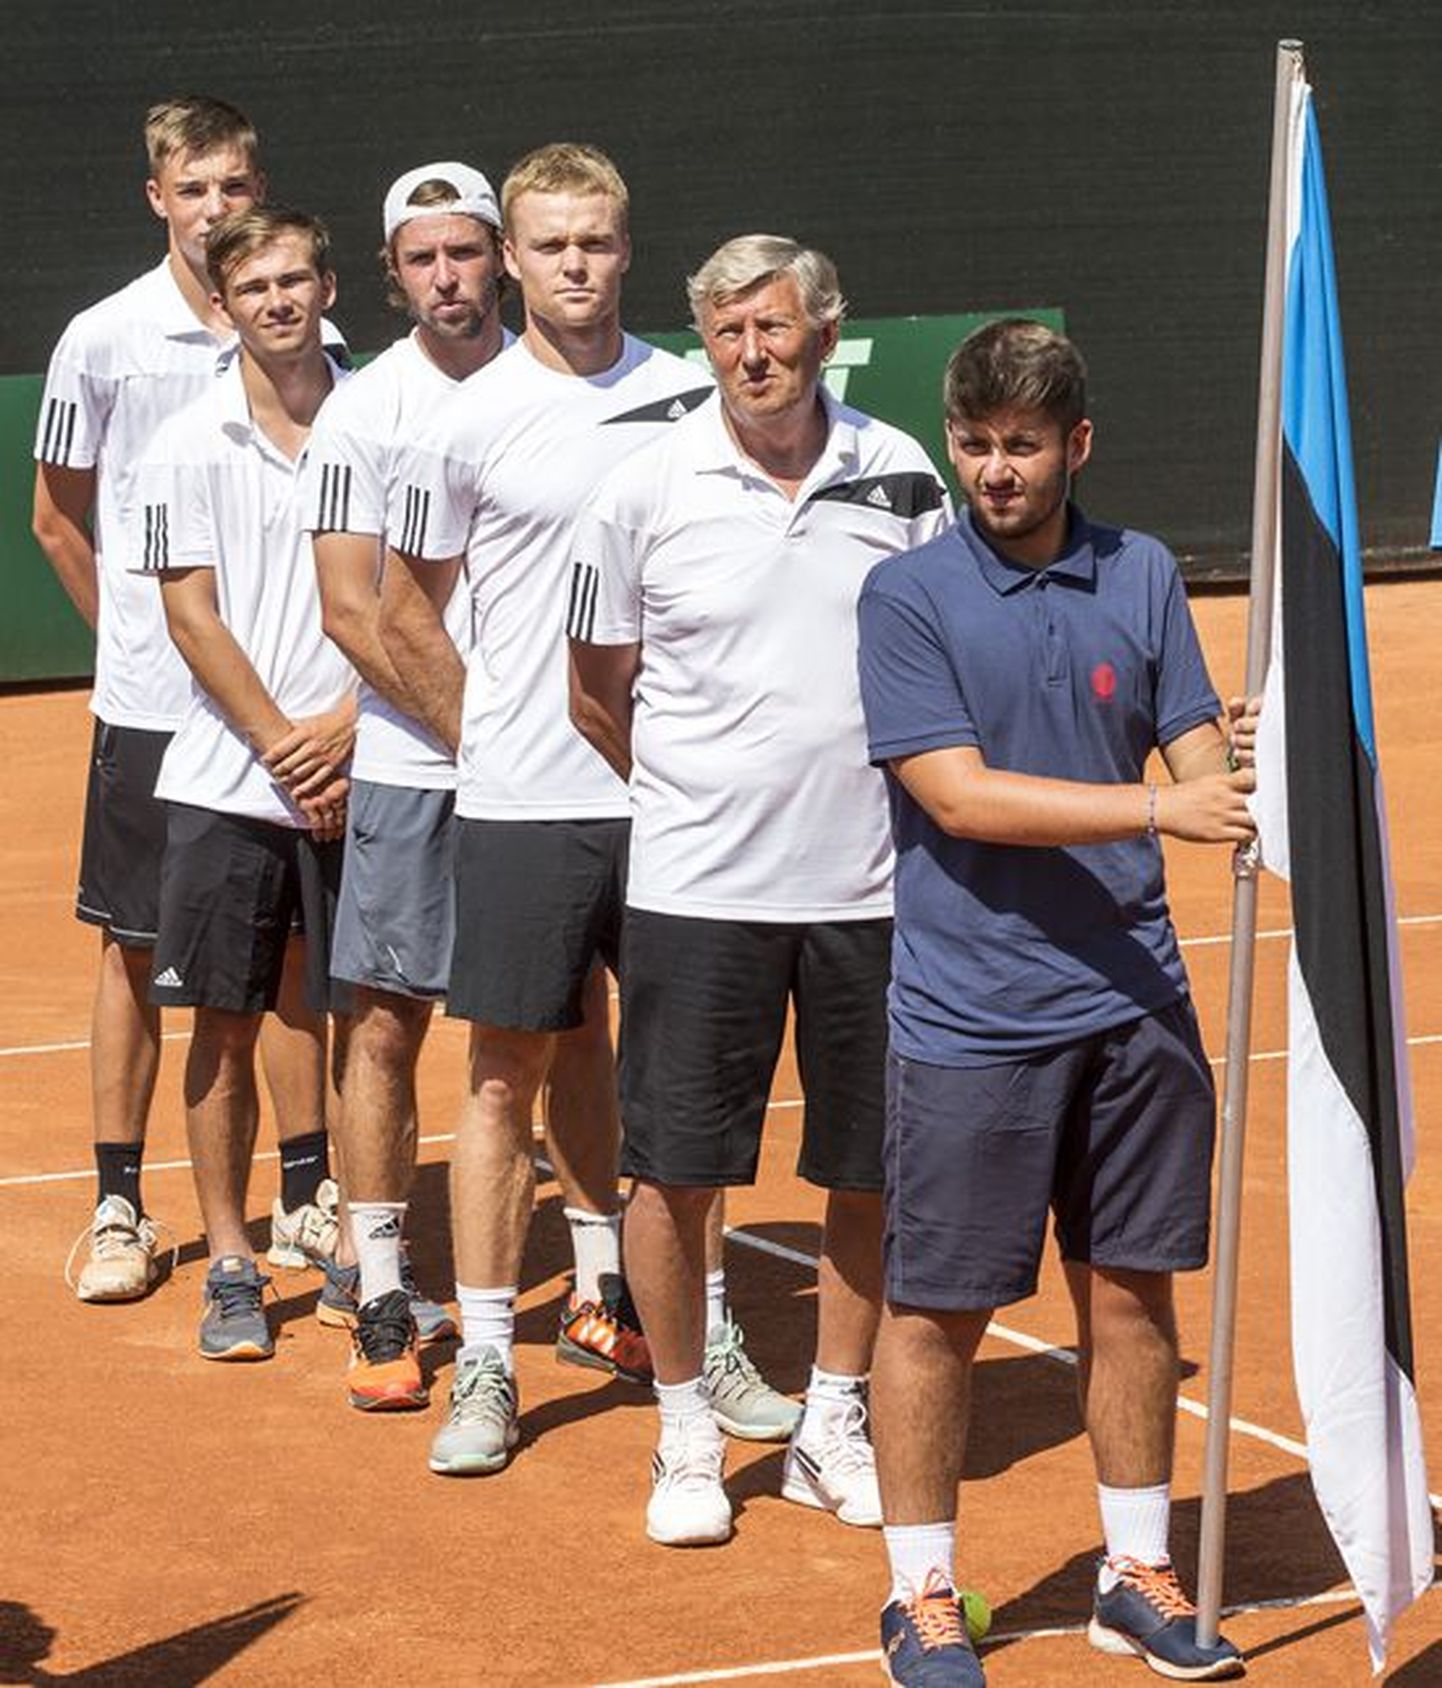 Eesti Davis Cupi meeskond San Marinos: Peeter Lamp, Jürgen Zopp, Vladimir Ivanov, Mattias Siimar ja Kenneth Raisma.